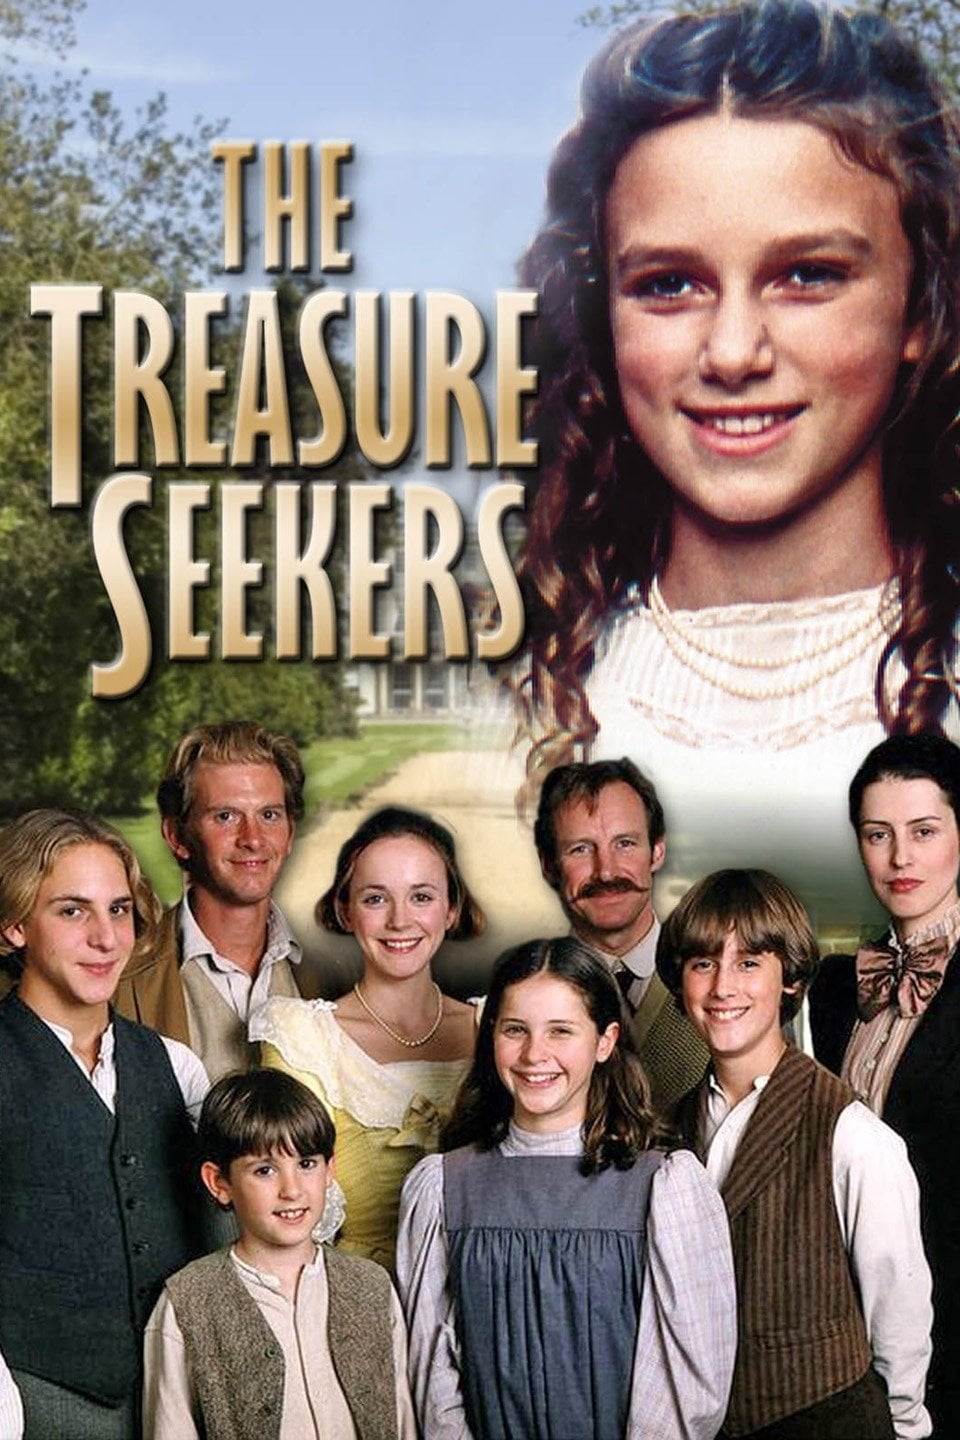 Plakat von "The Treasure Seekers"